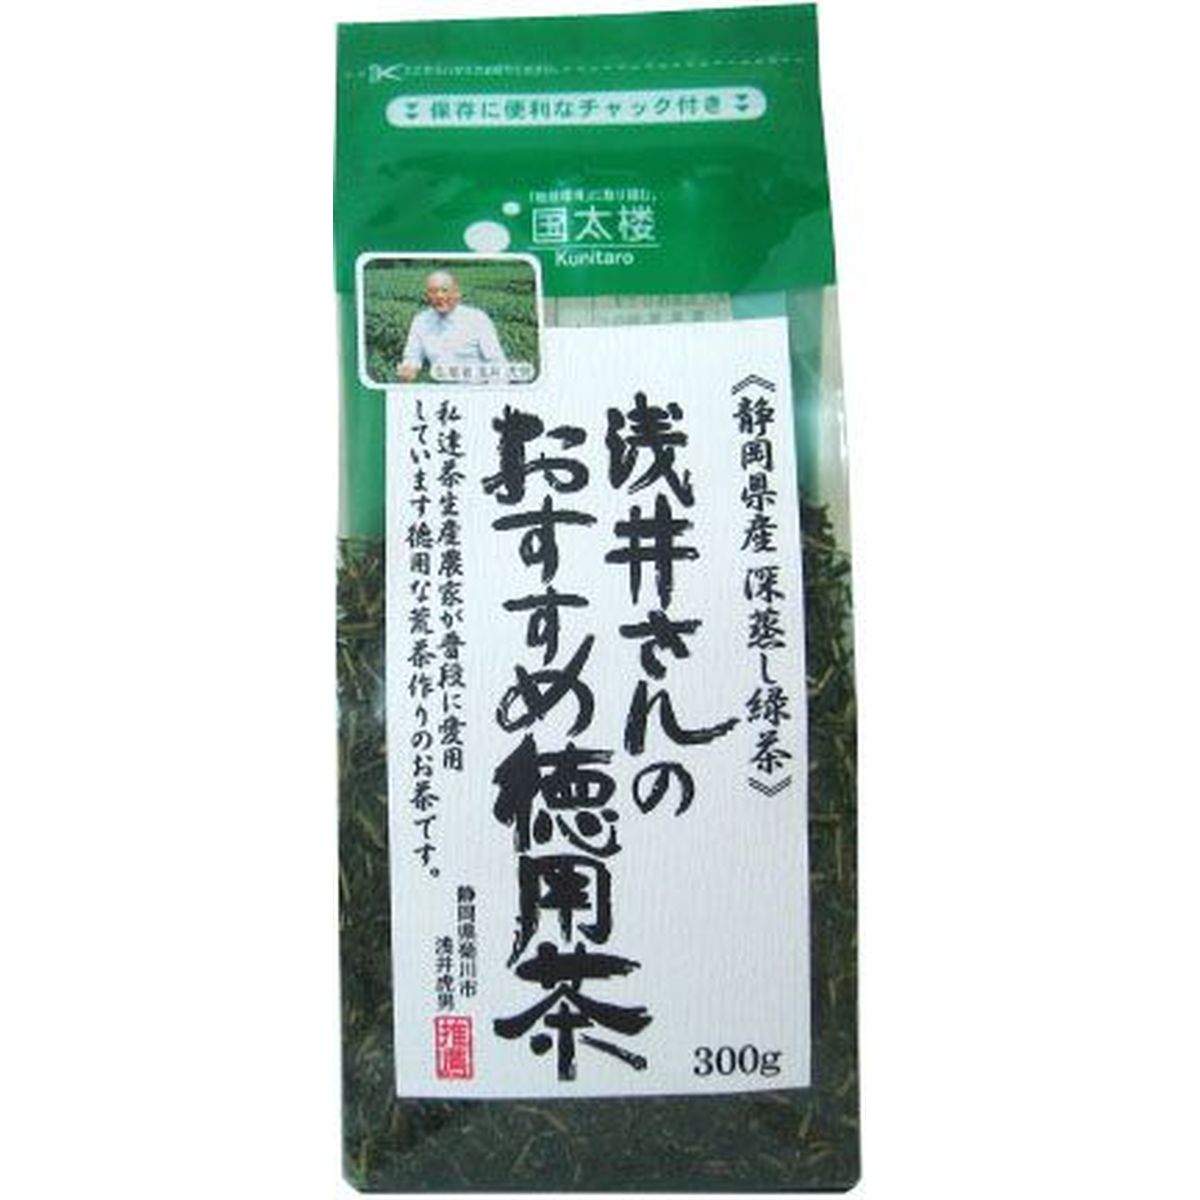 【12個入リ】国太楼 茶農家 浅井サンノオススメ徳用茶 300g